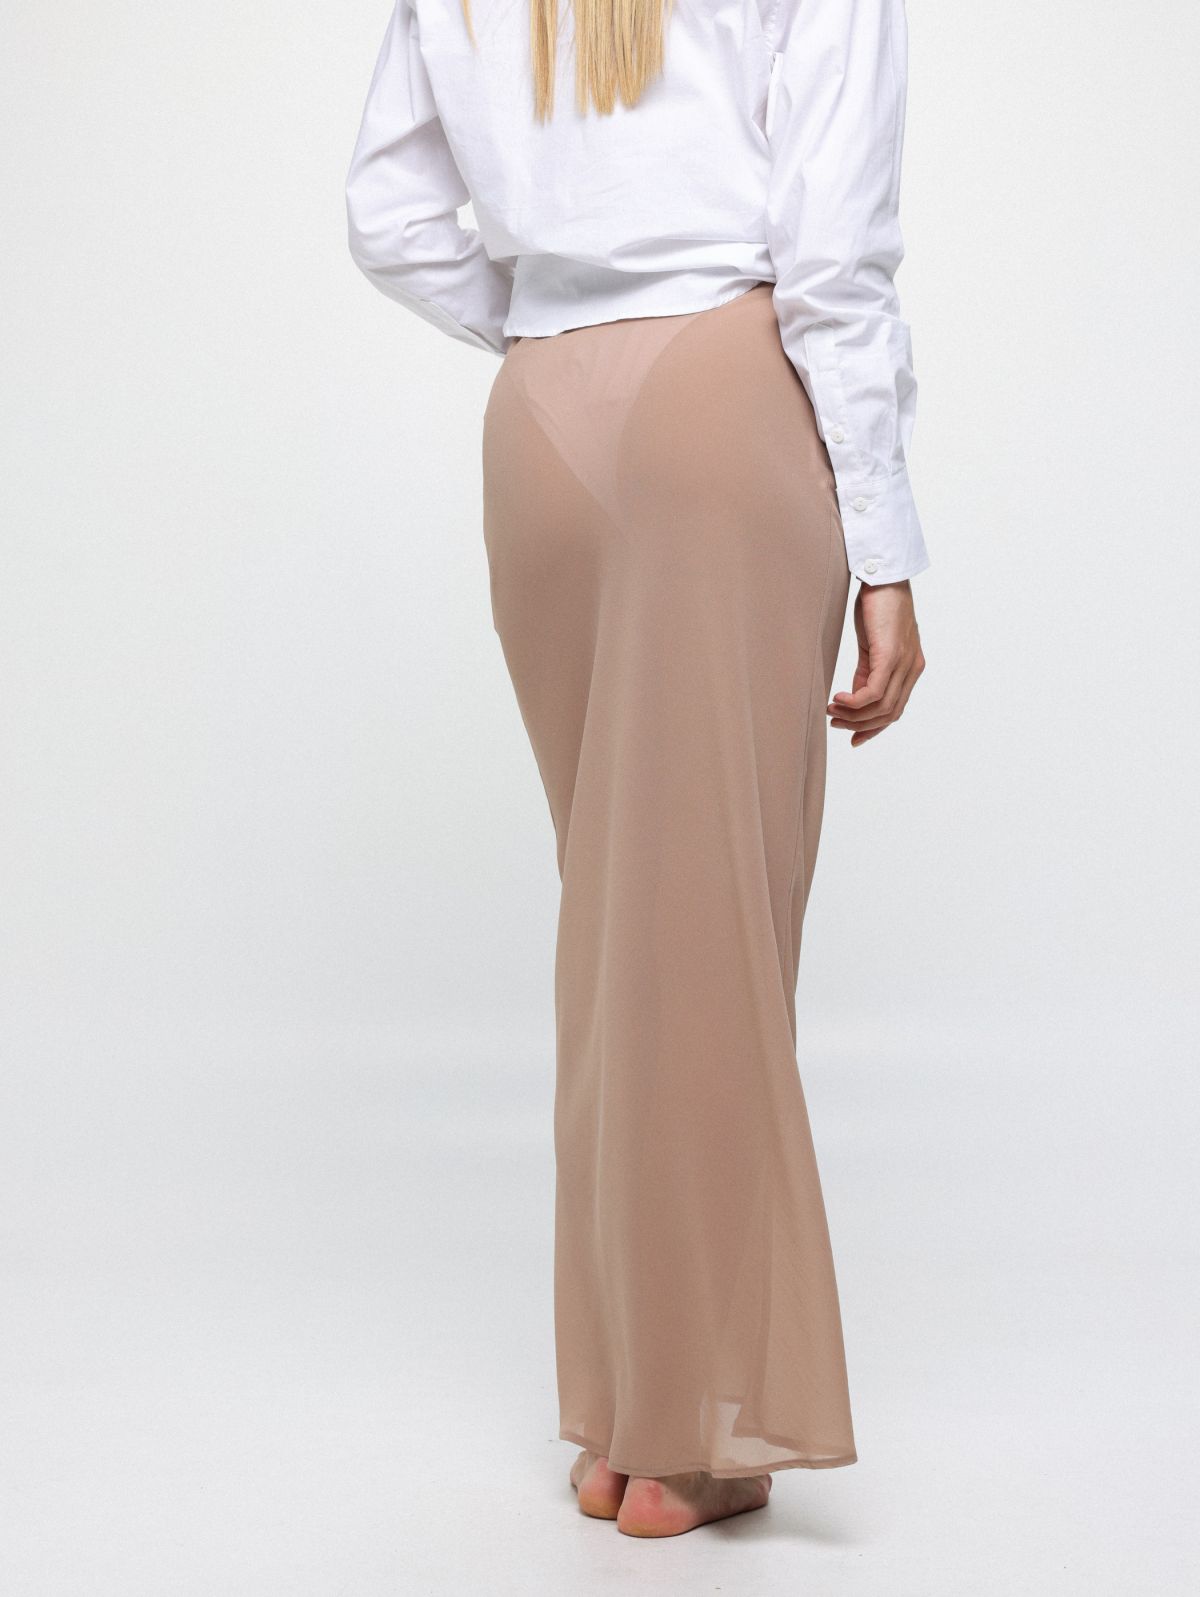  חצאית מקסי מבד שיפון / Tal Noy של TX COLLAB